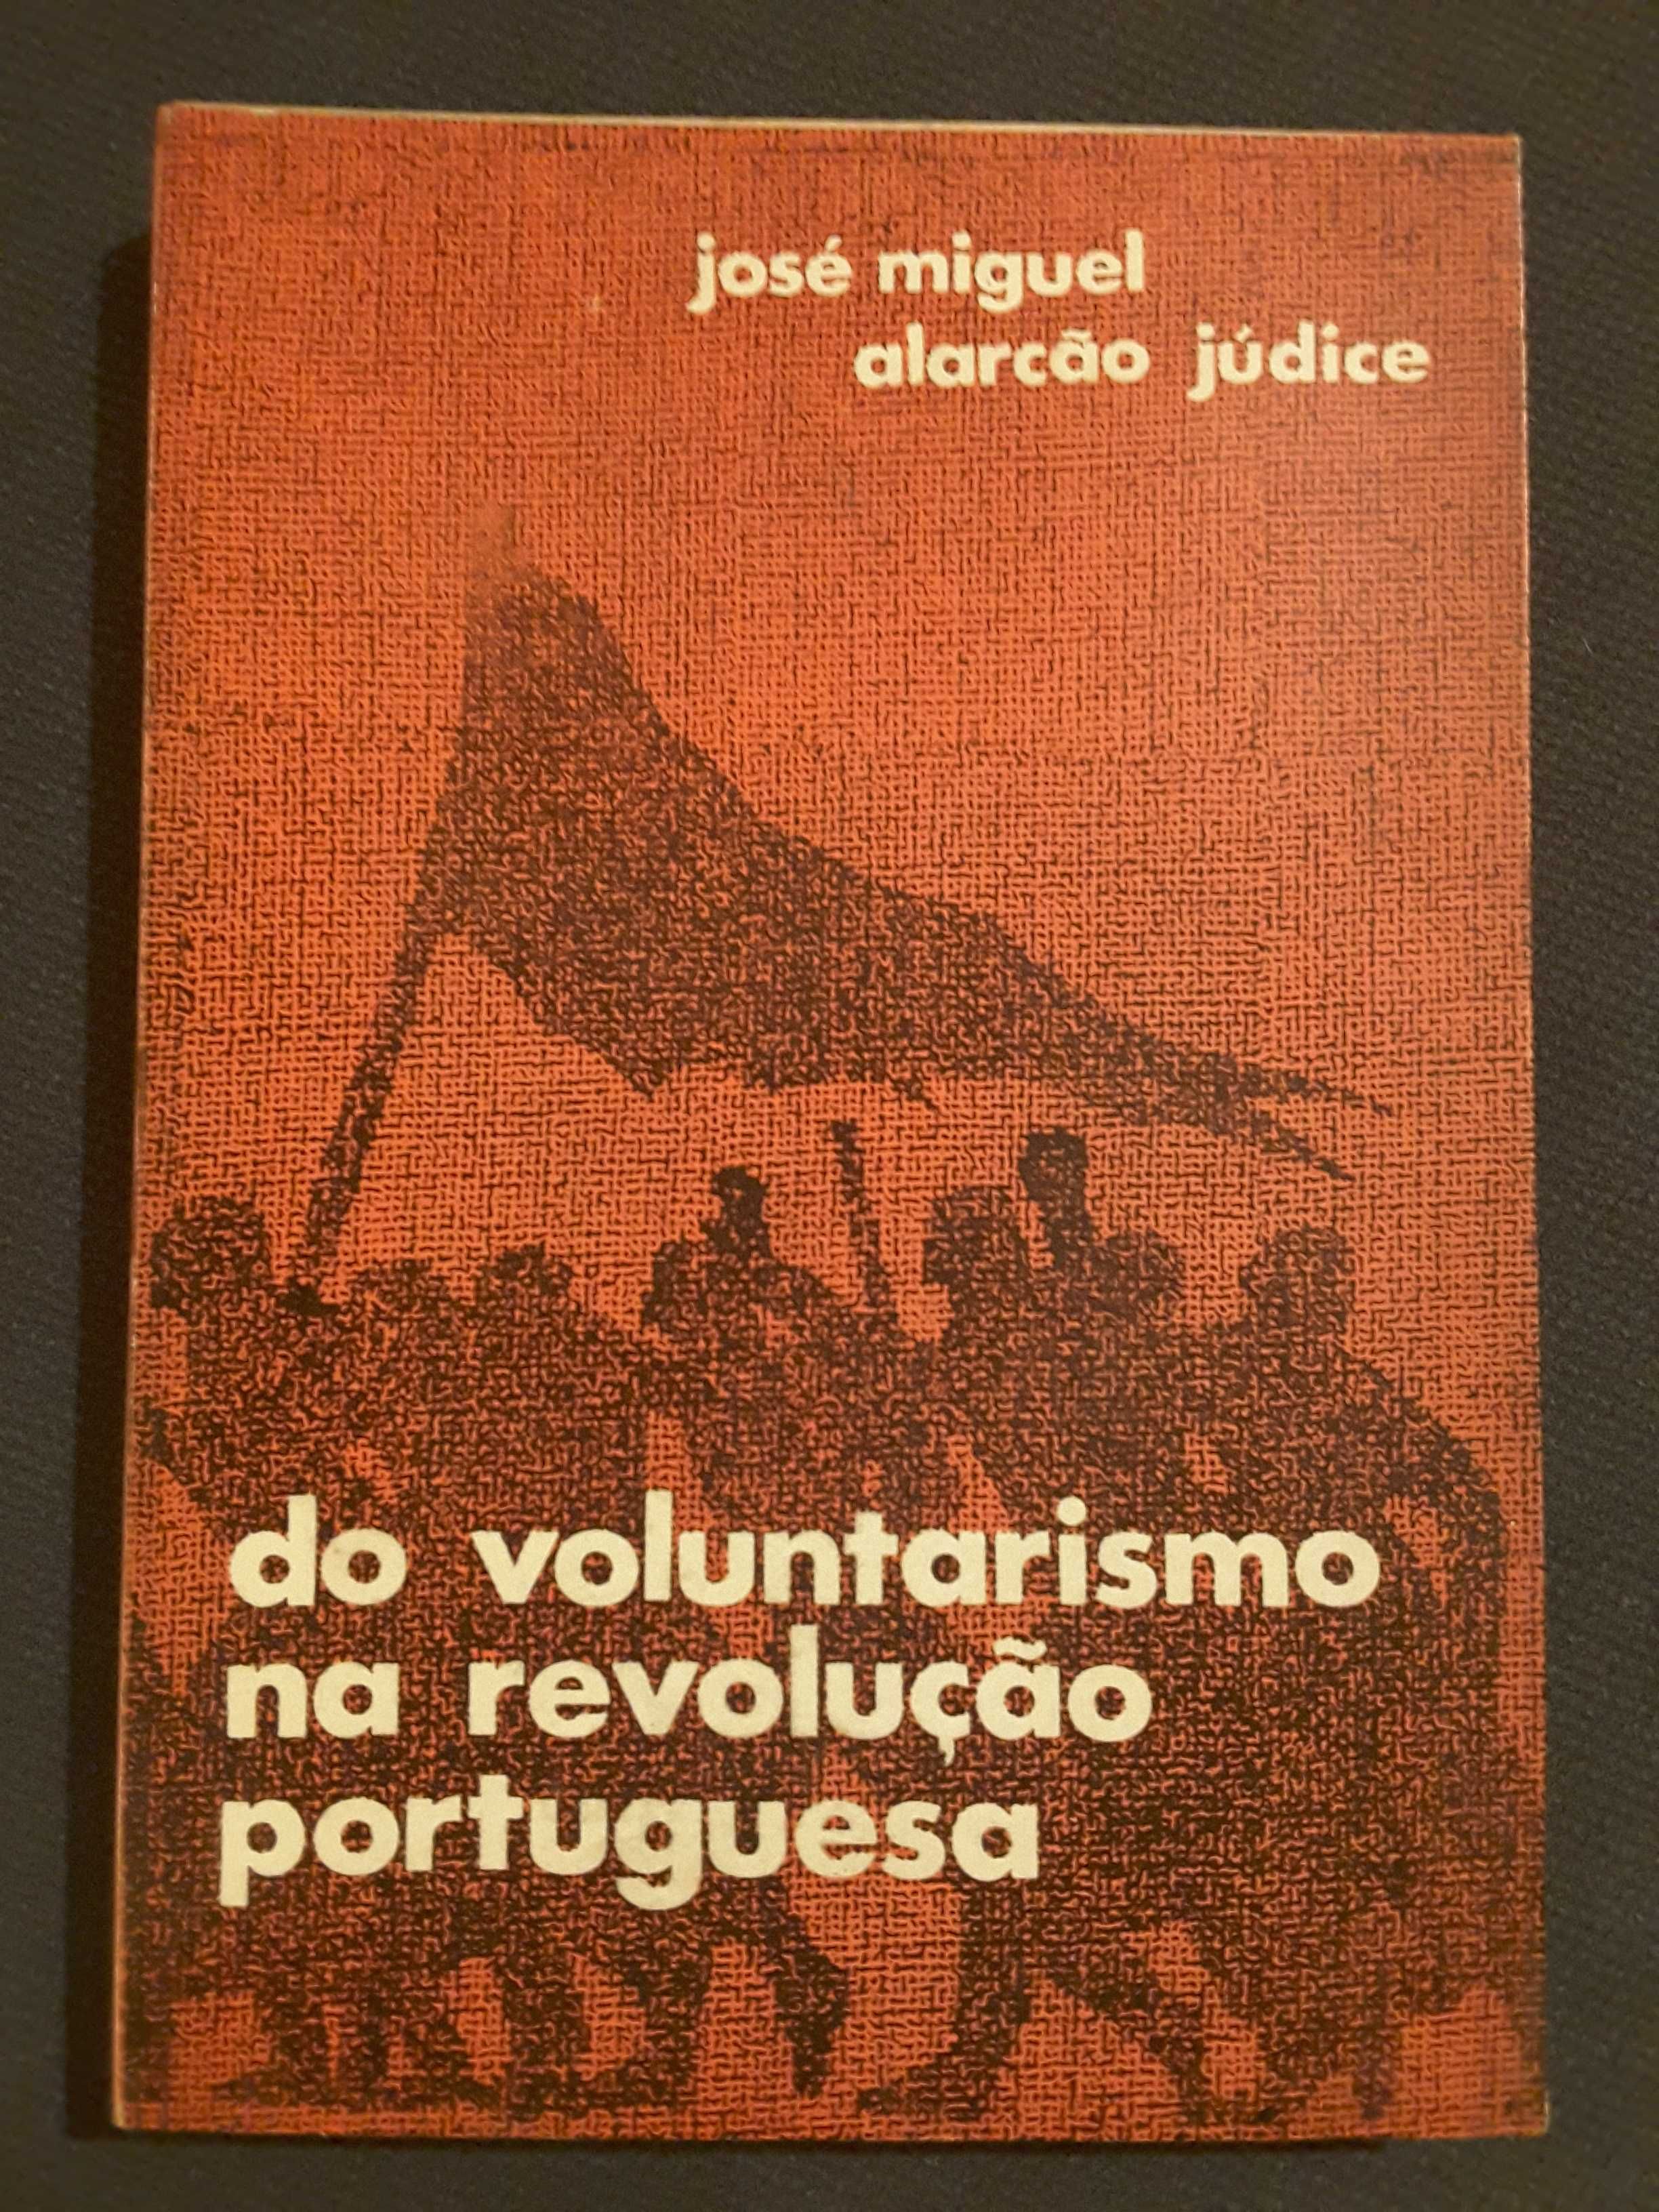 25 de Abril/ Do Voluntarismo na Revolução / Portugal Traído